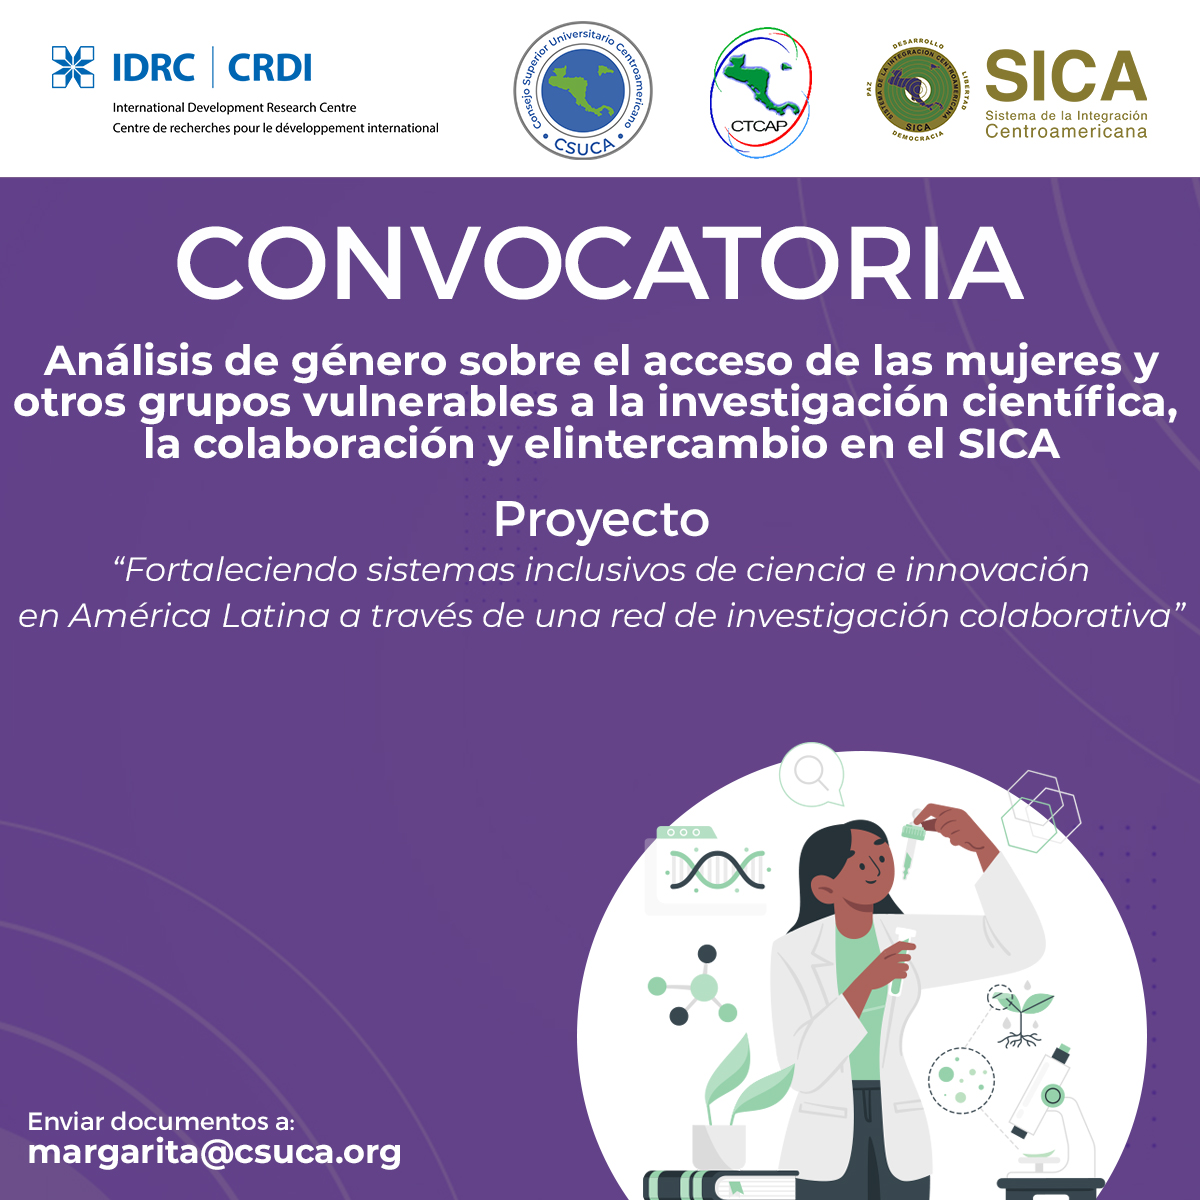 Convocatória “Análisis de género sobre el acceso de las mujeres y otros grupos vulnerables a la investigación científica, la colaboración y el intercambio en el Sistema de Integración Centroamericana”